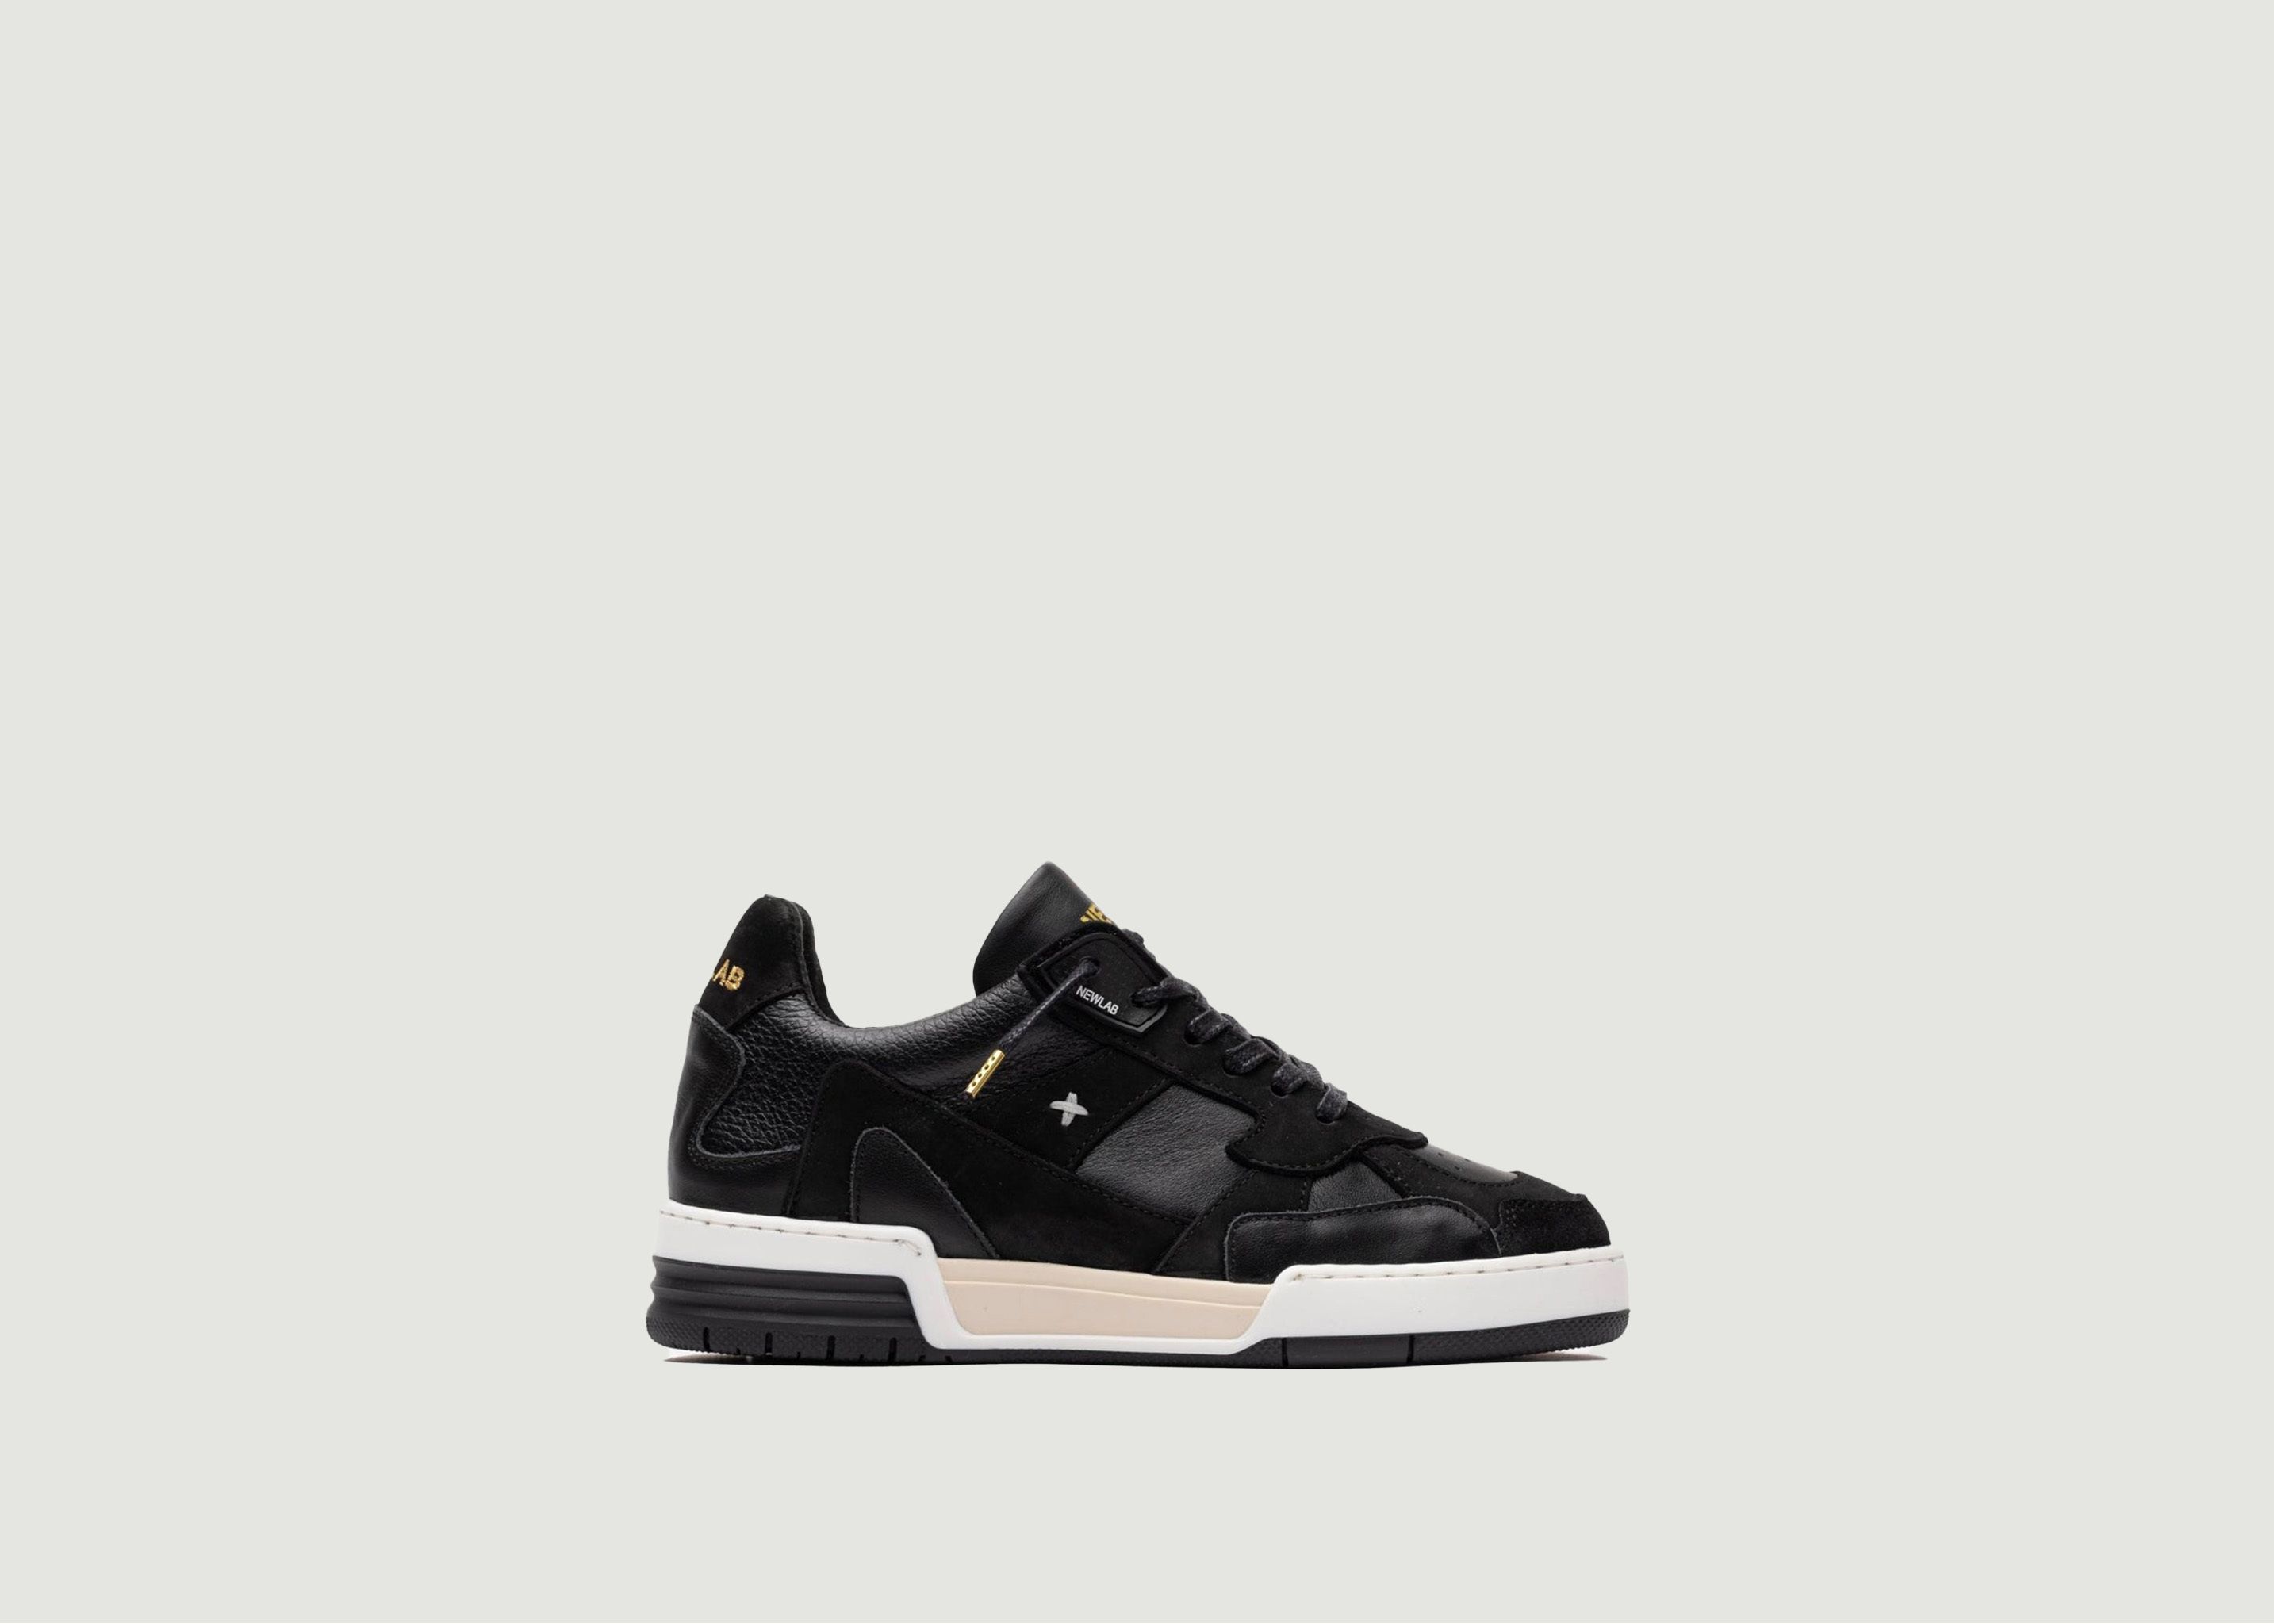 Sneaker black - Newlab